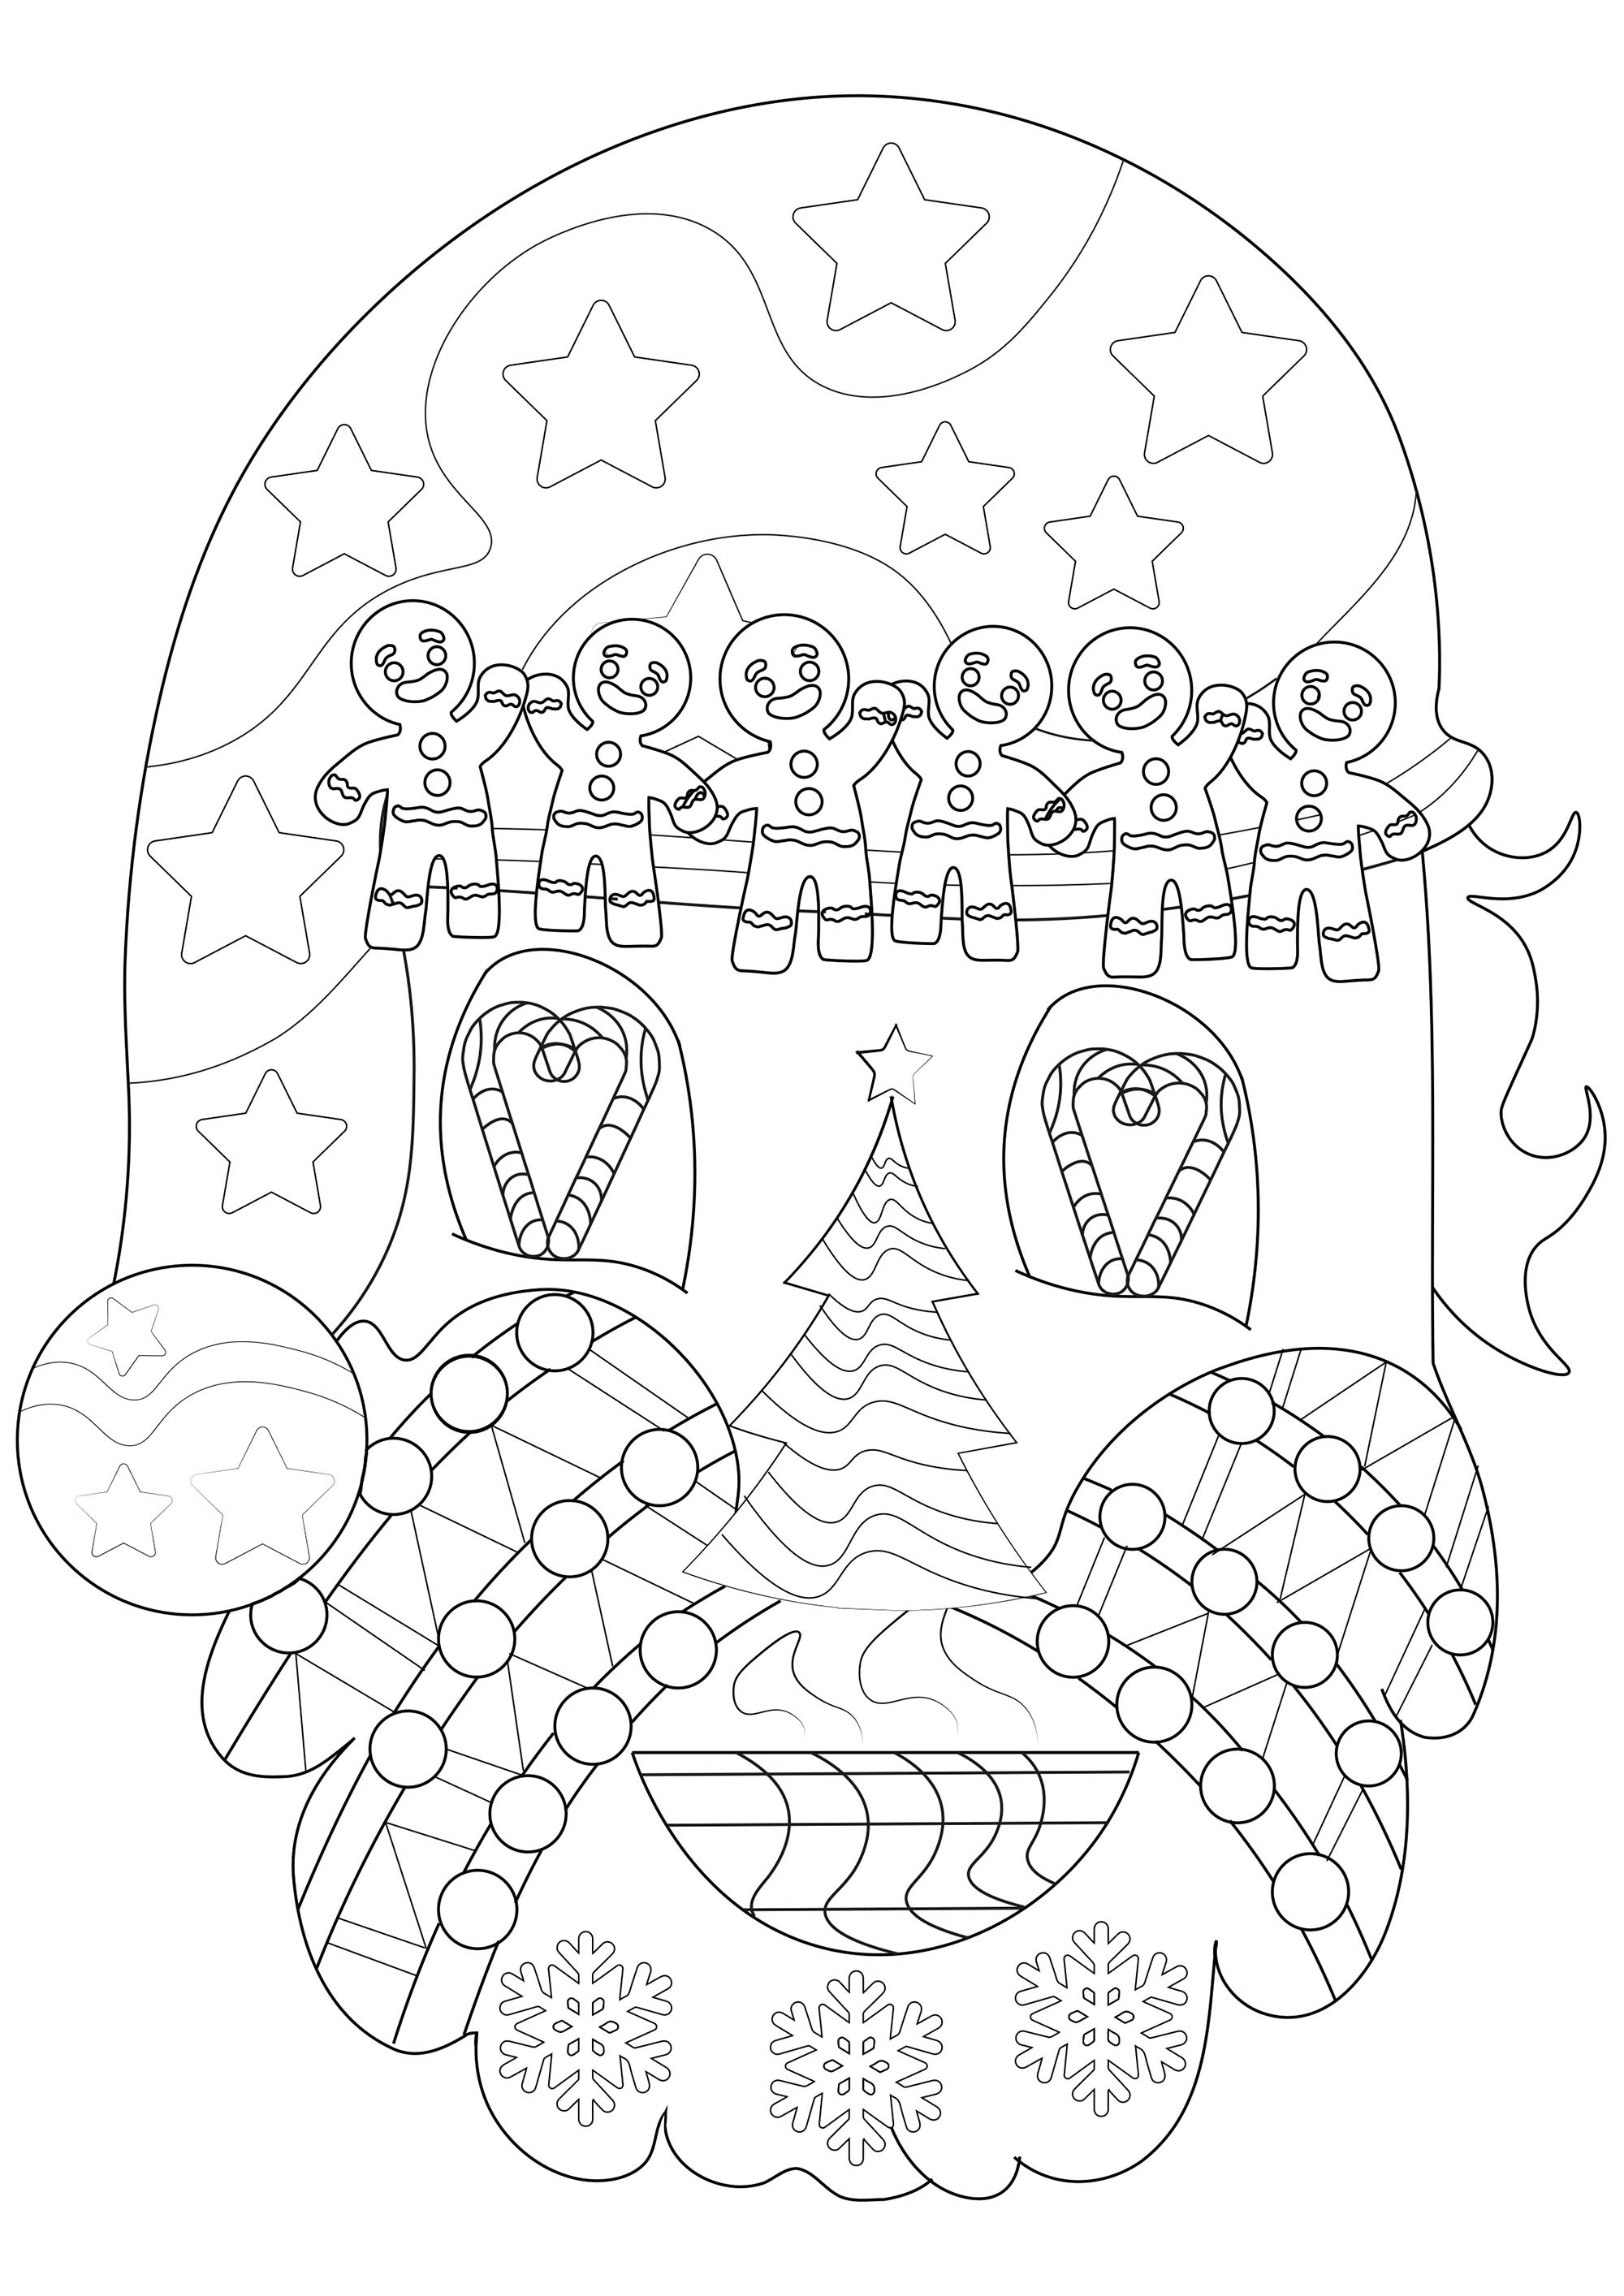 Coloriage pour enfants du Père Noël, avec plein de motifs du Noël dans son visage